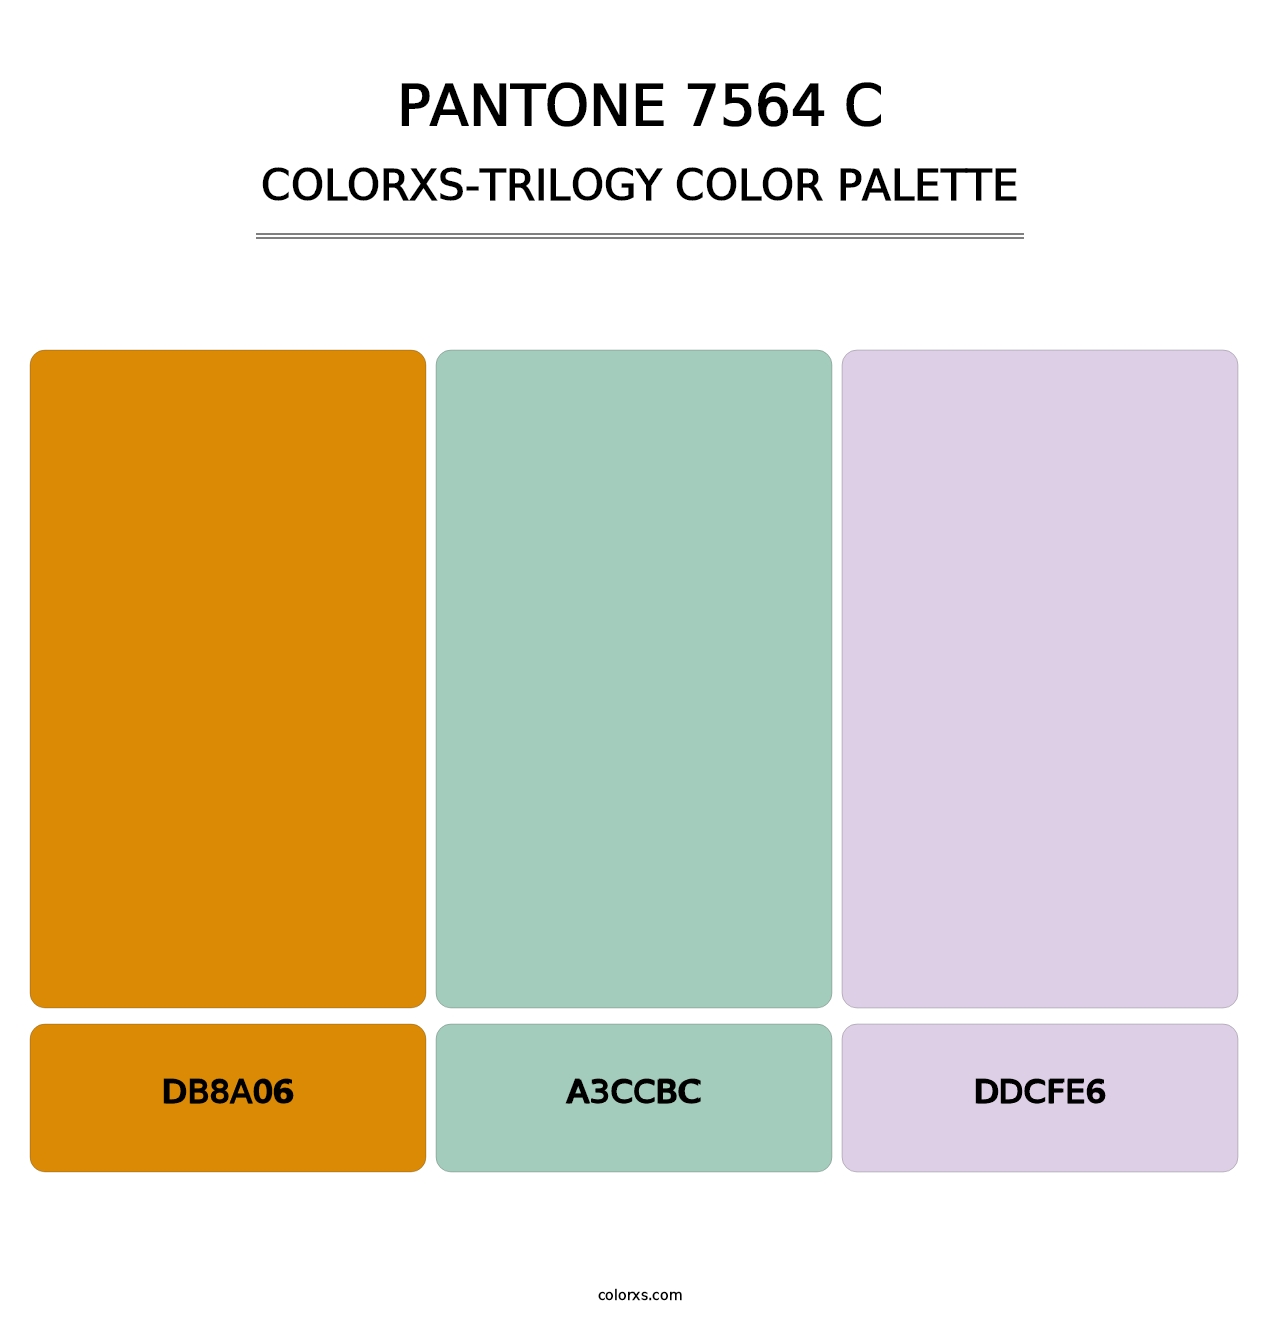 PANTONE 7564 C - Colorxs Trilogy Palette